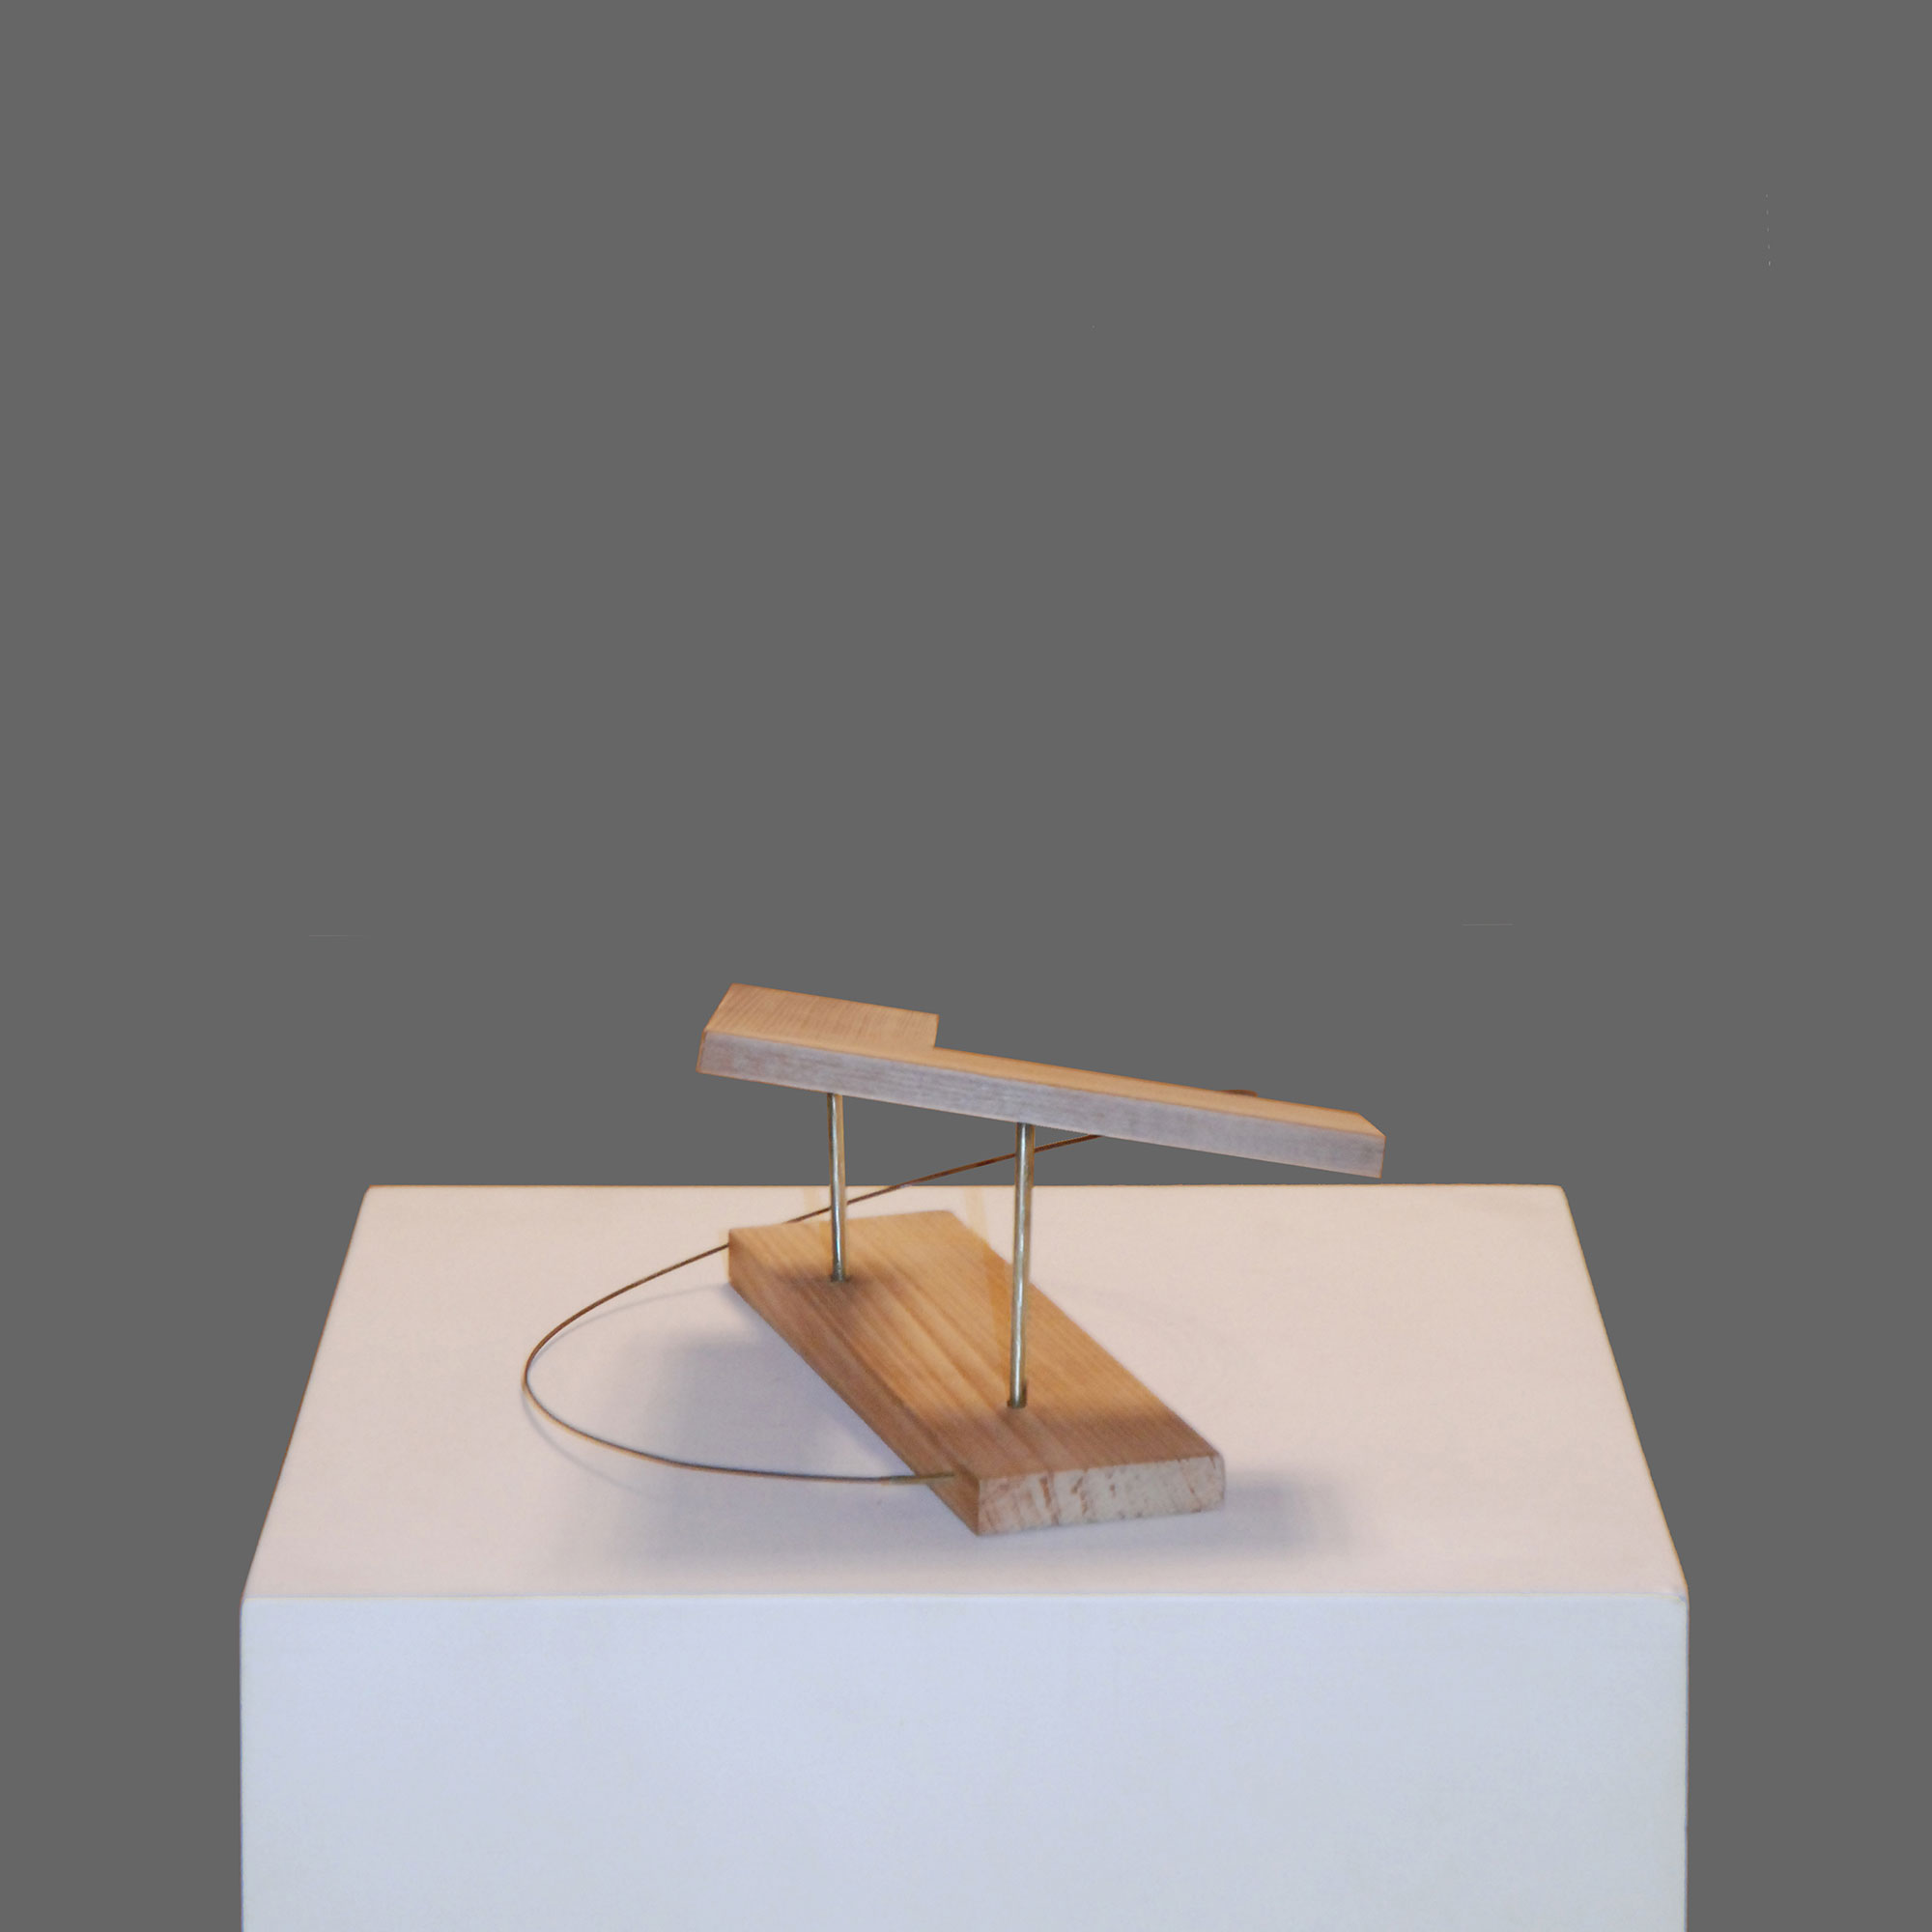 L'équilibre, 1997, sculpture en bois et métaux